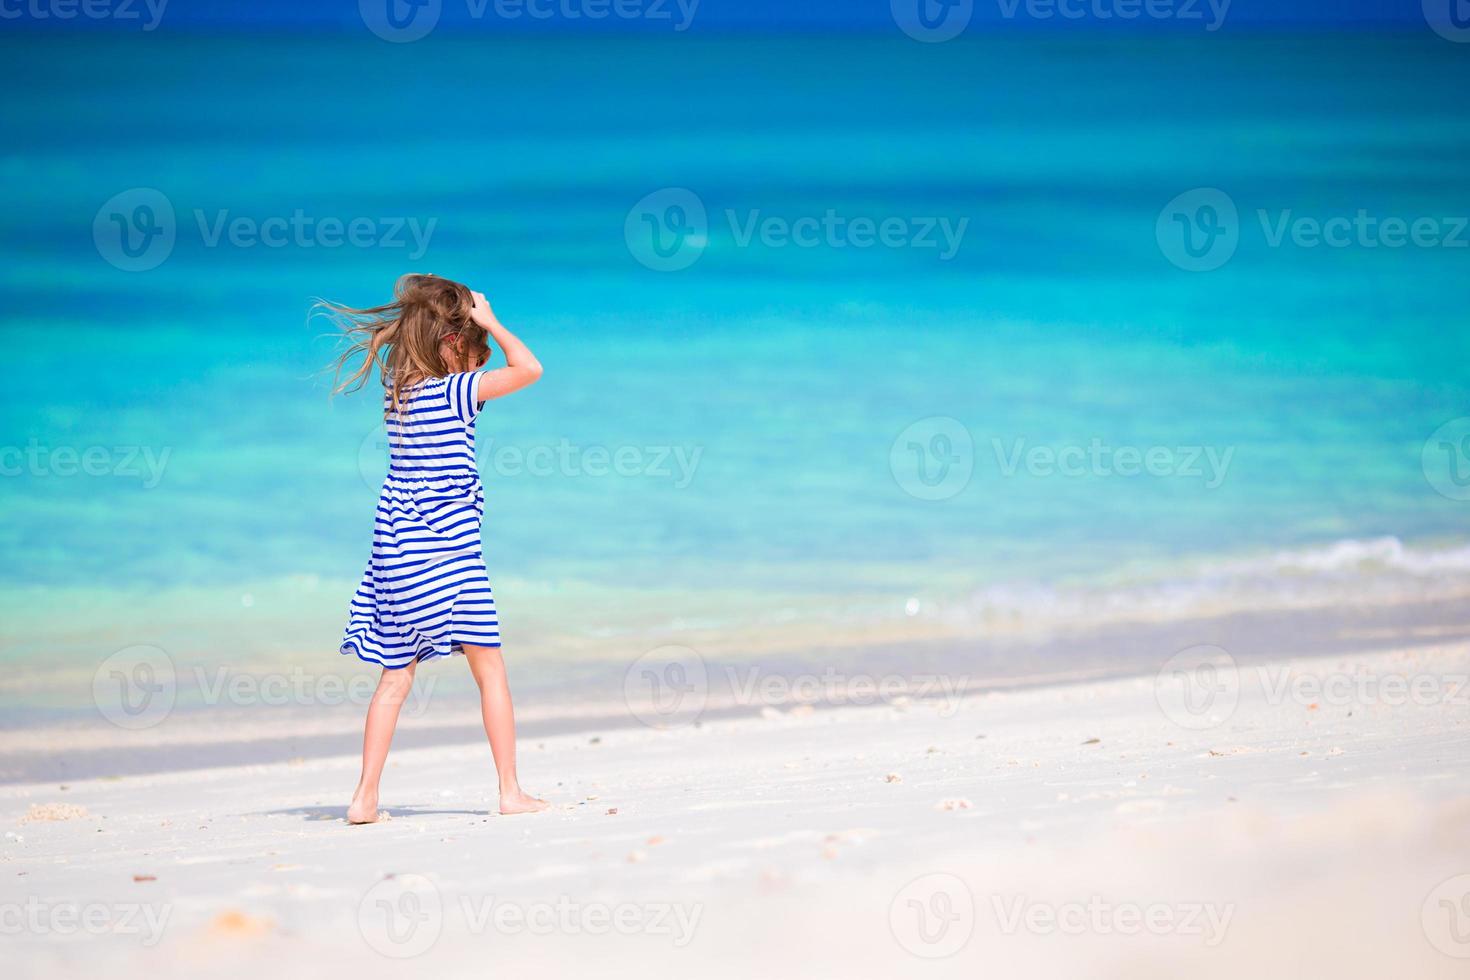 schattig klein meisje op het strand tijdens de zomervakantie foto